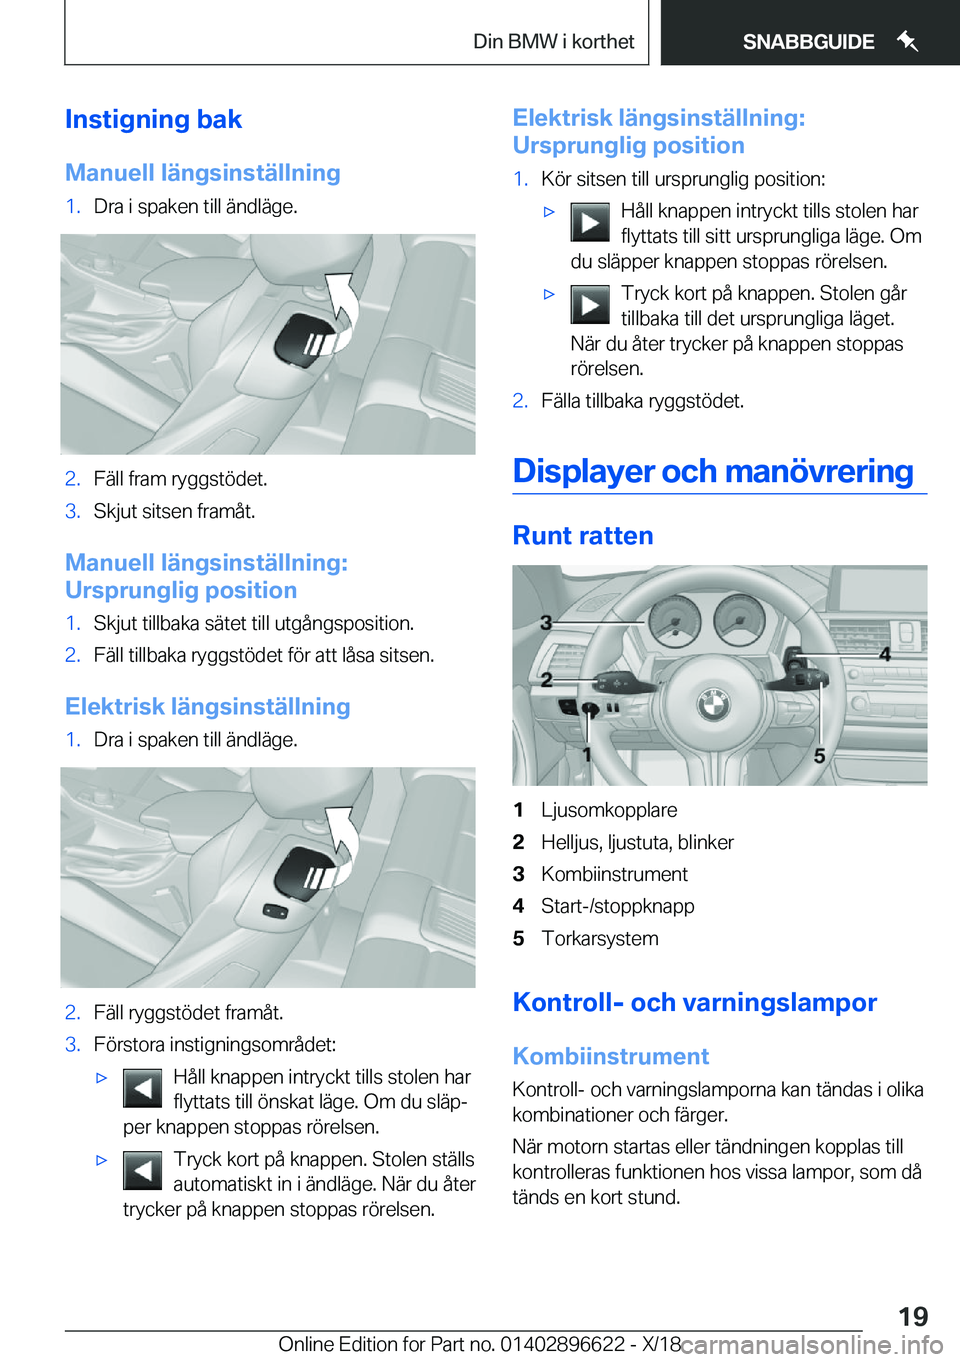 BMW M2 2019  InstruktionsbÖcker (in Swedish) �I�n�s�t�i�g�n�i�n�g��b�a�k
�M�a�n�u�e�l�l��l�ä�n�g�s�i�n�s�t�ä�l�l�n�i�n�g�1�.�D�r�a��i��s�p�a�k�e�n��t�i�l�l��ä�n�d�l�ä�g�e�.�2�.�F�ä�l�l��f�r�a�m��r�y�g�g�s�t�